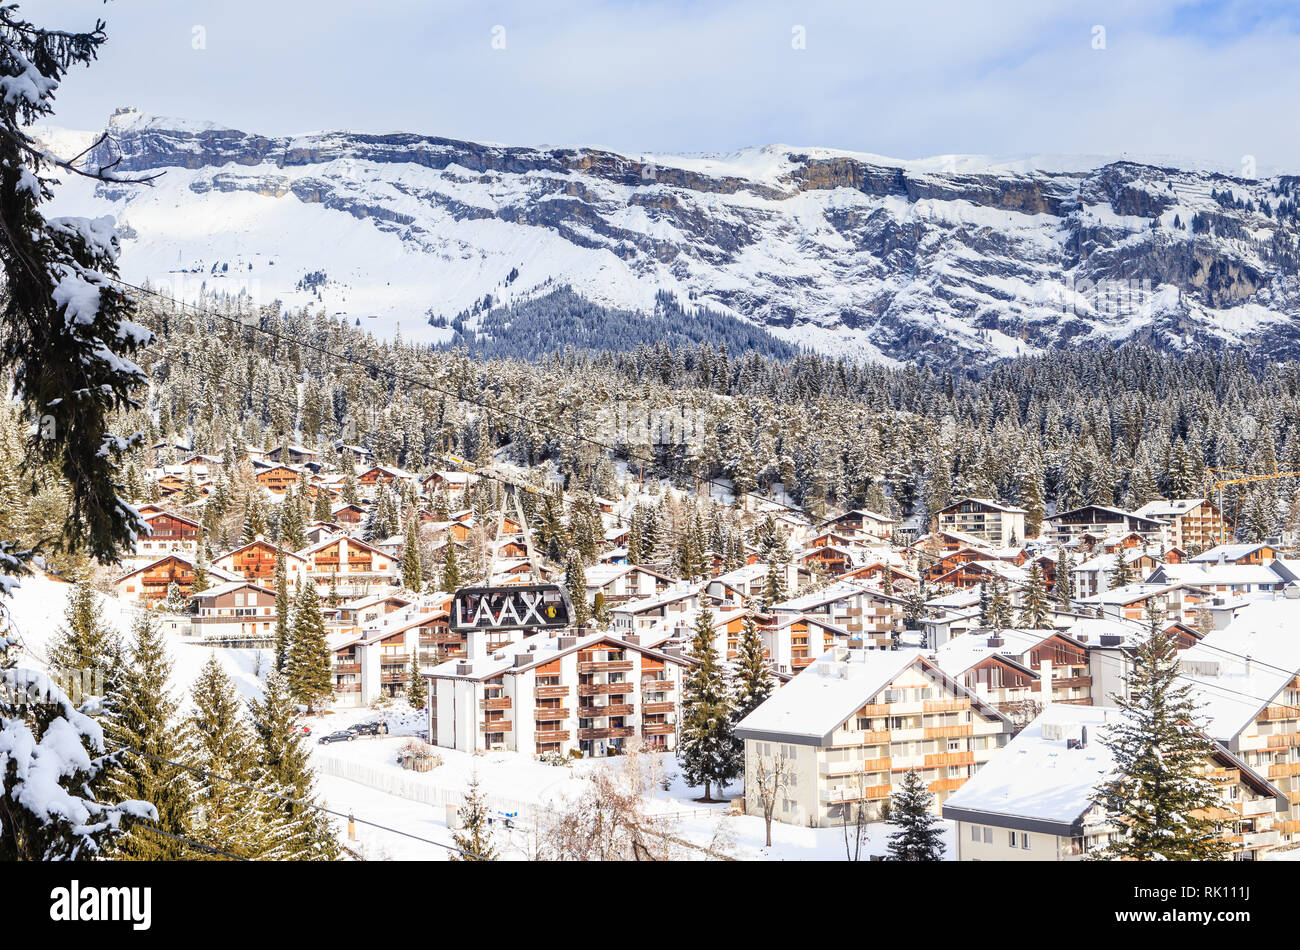 Ski Resort Laax. Switzerland Stock Photo: 235436030 - Alamy